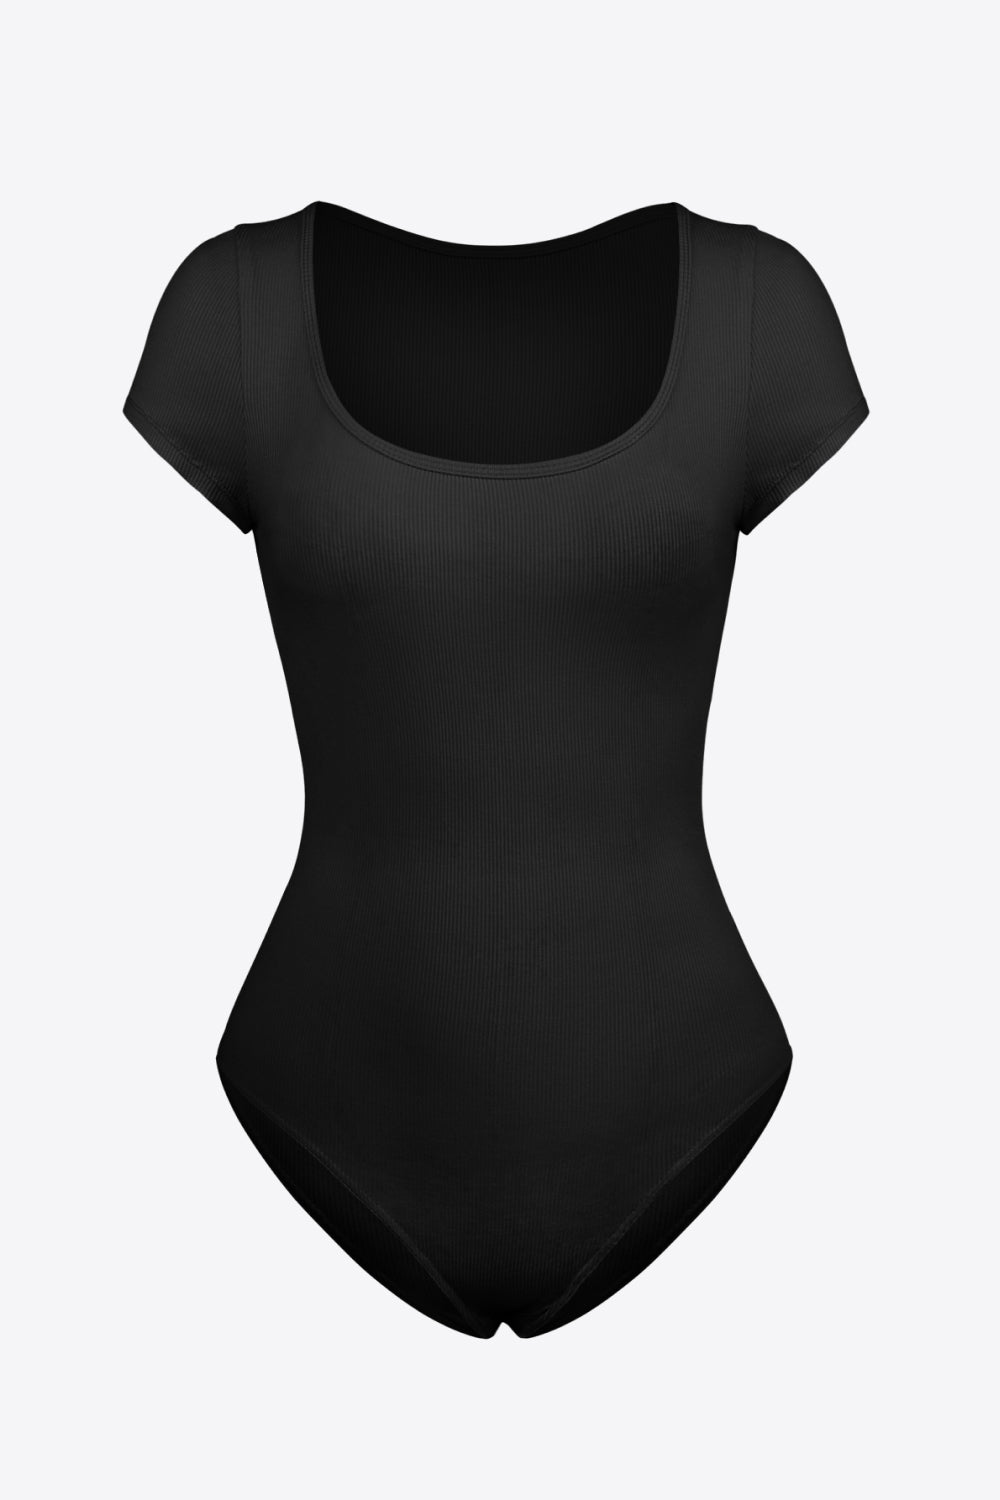 The Erin Short Sleeve Bodysuit